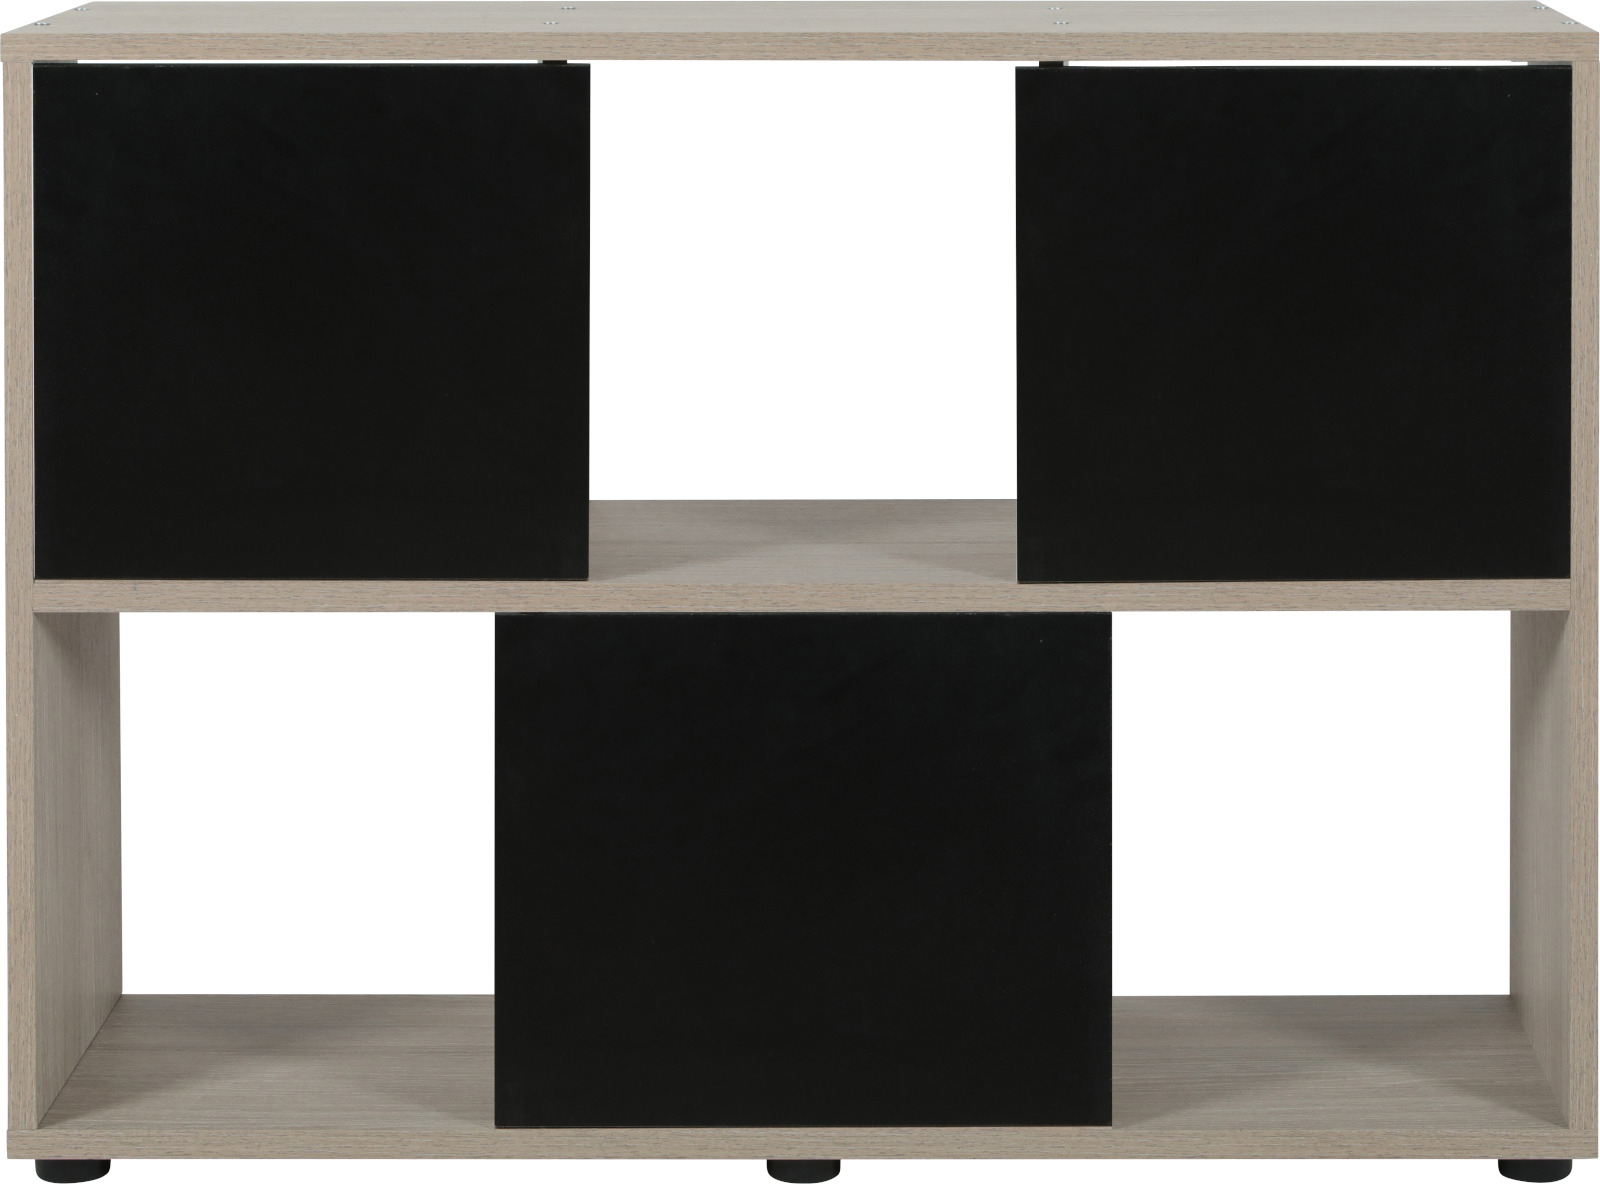 Mueble para acuario ISEO 100 x 30 cm - disponible en blanco o negro